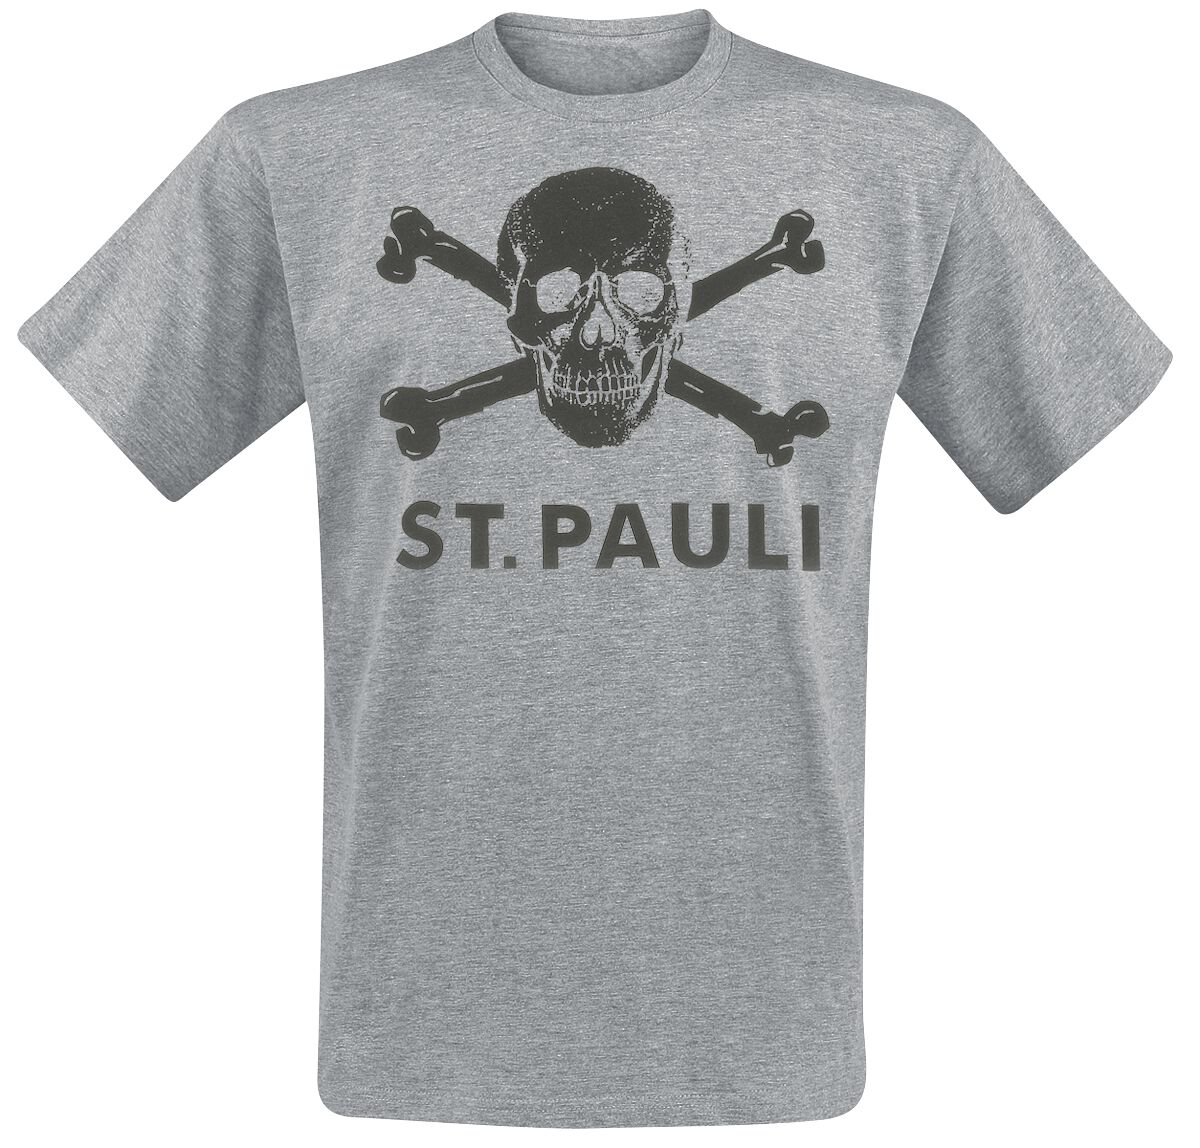 Nuevo Camiseta Pauli Barata | Compra Online Precios Super Baratos